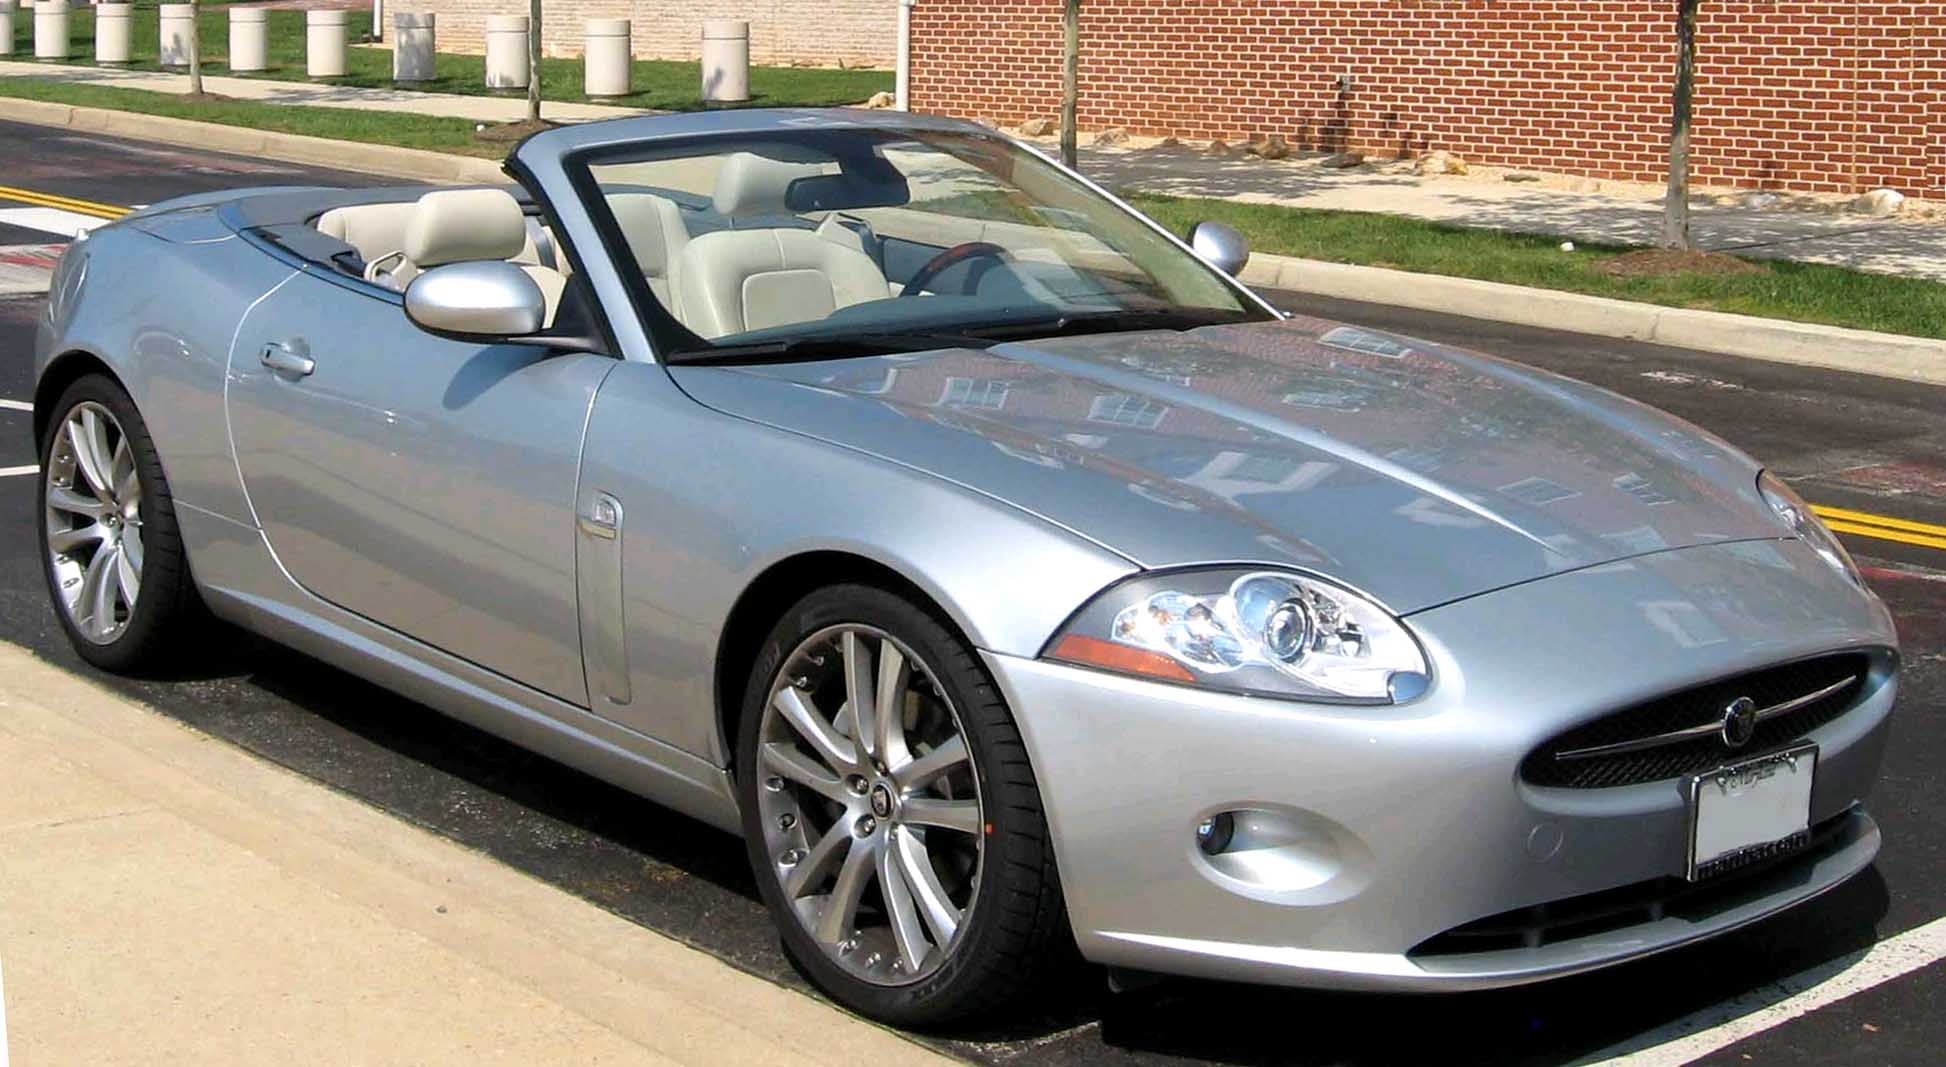 File:2007-Jaguar-XK8-convertible.jpg - Wikipedia